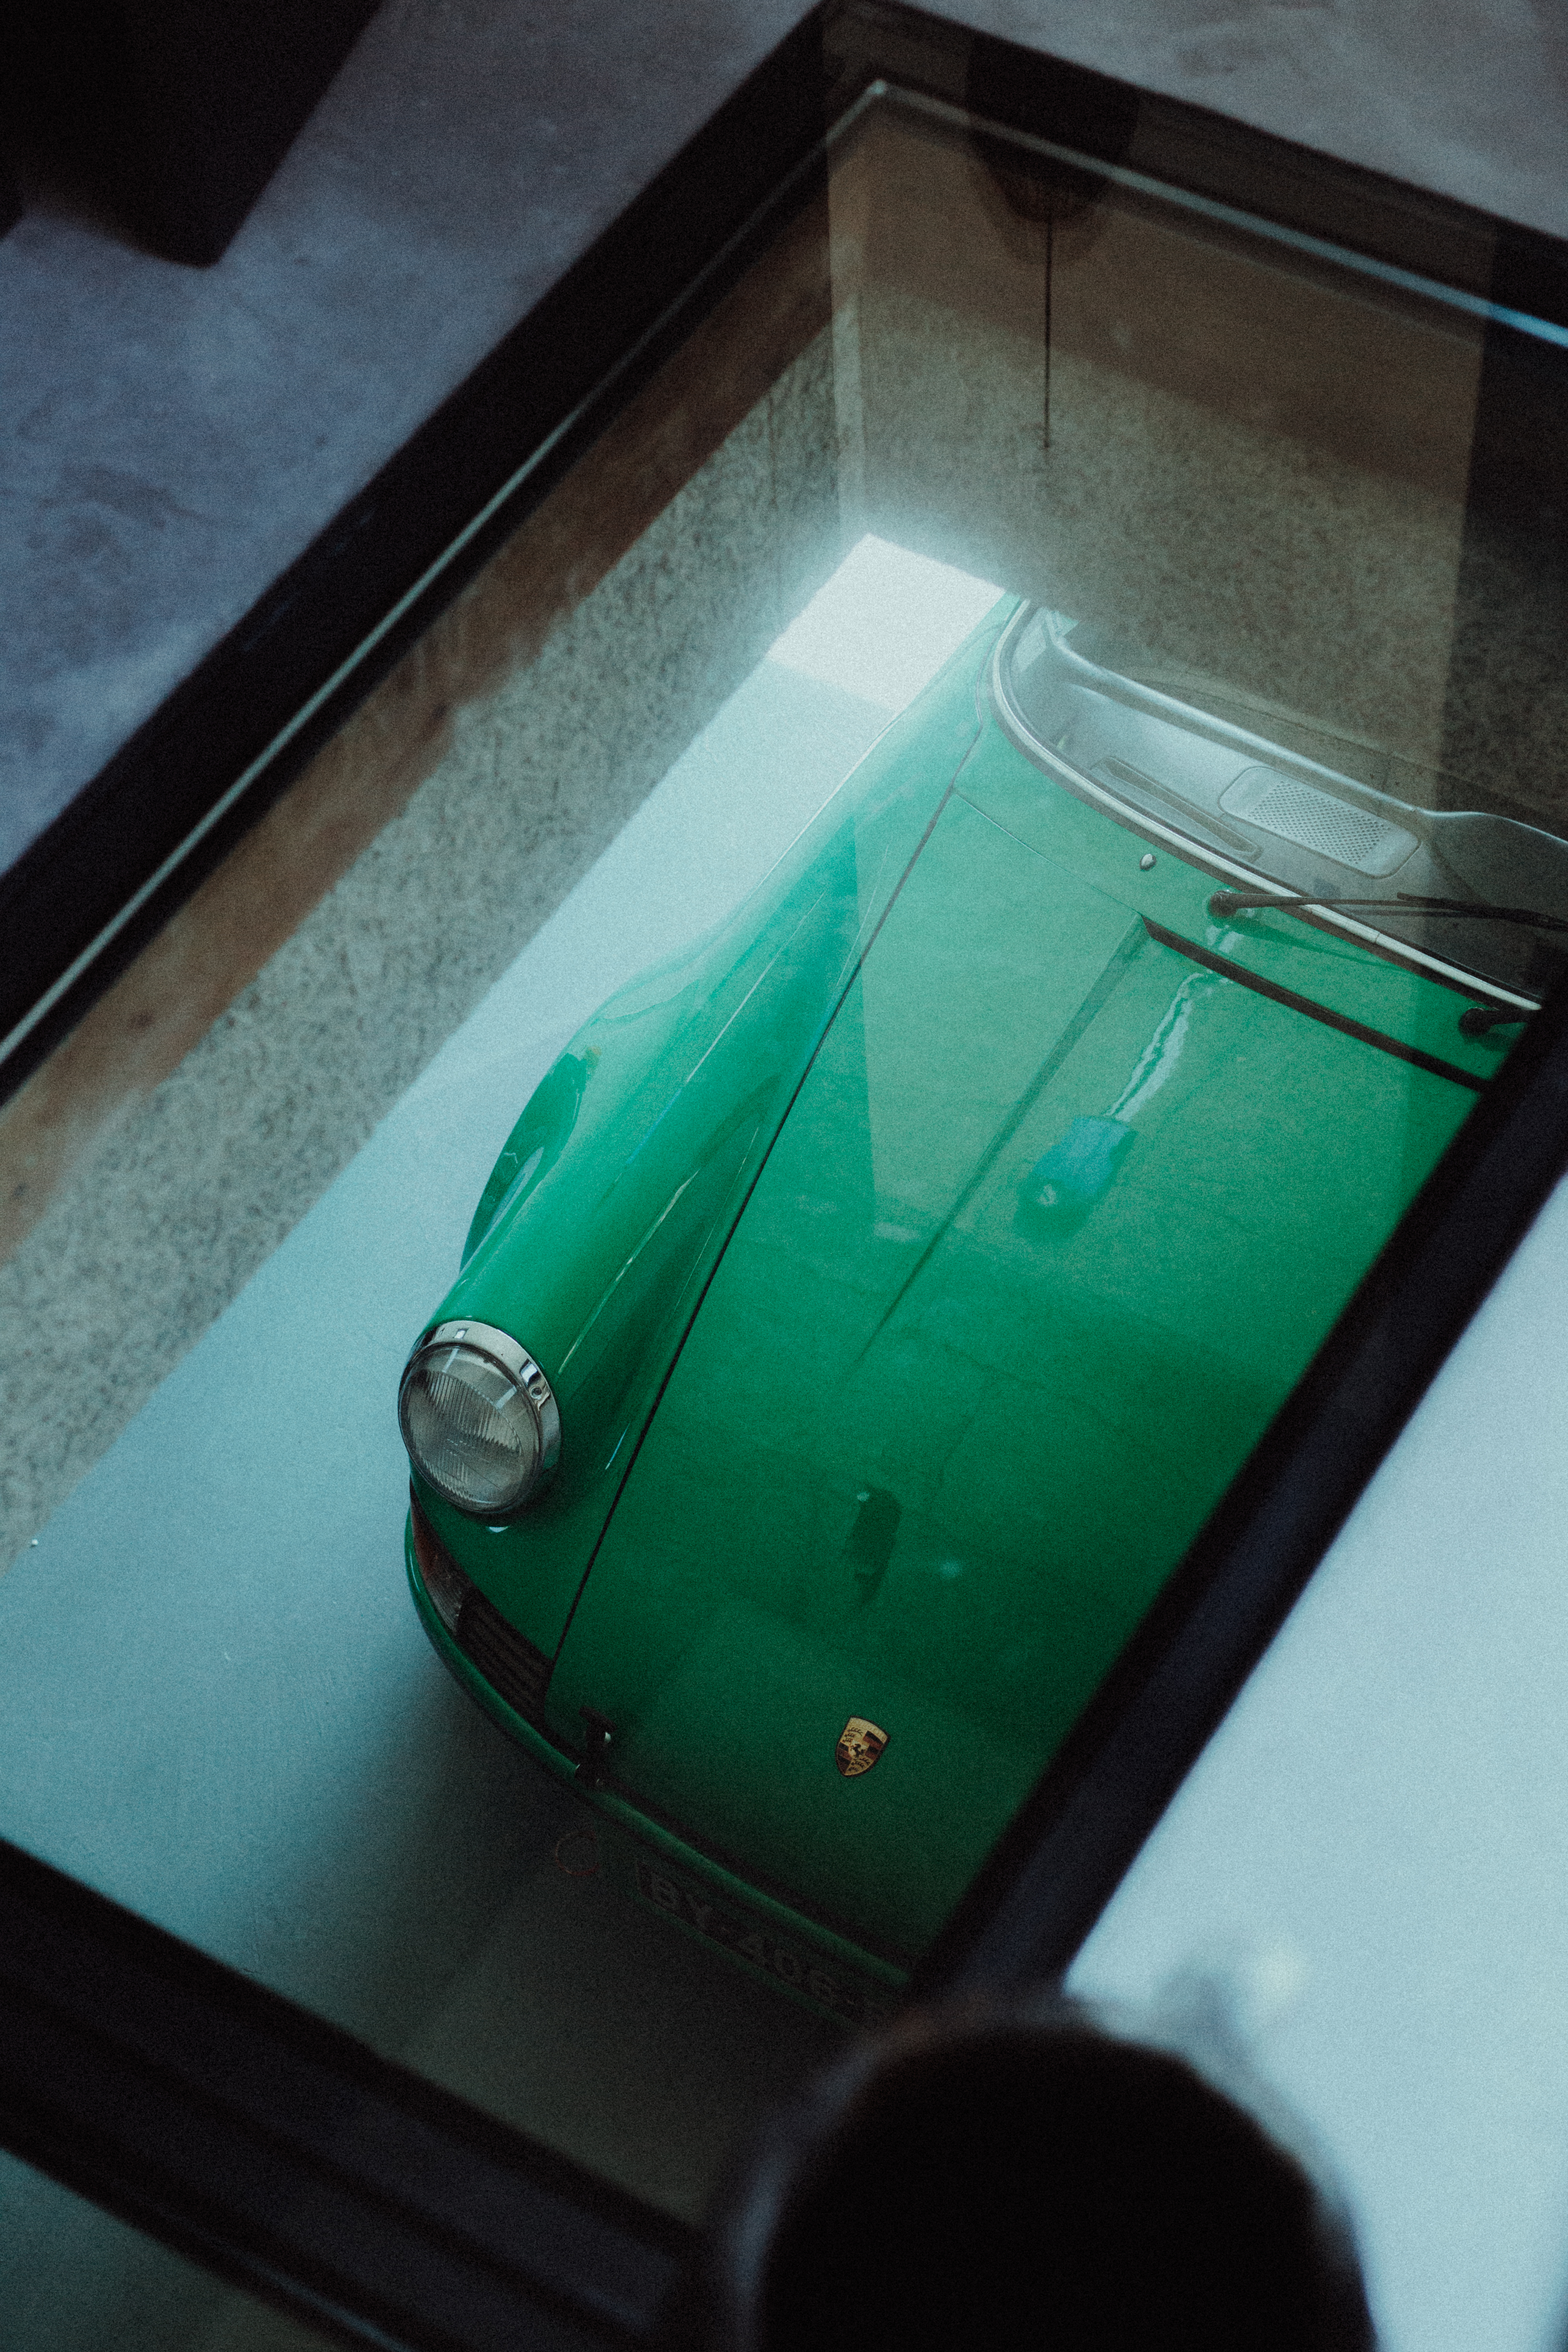 Green Porsche 911 seen through glass floor of a living room